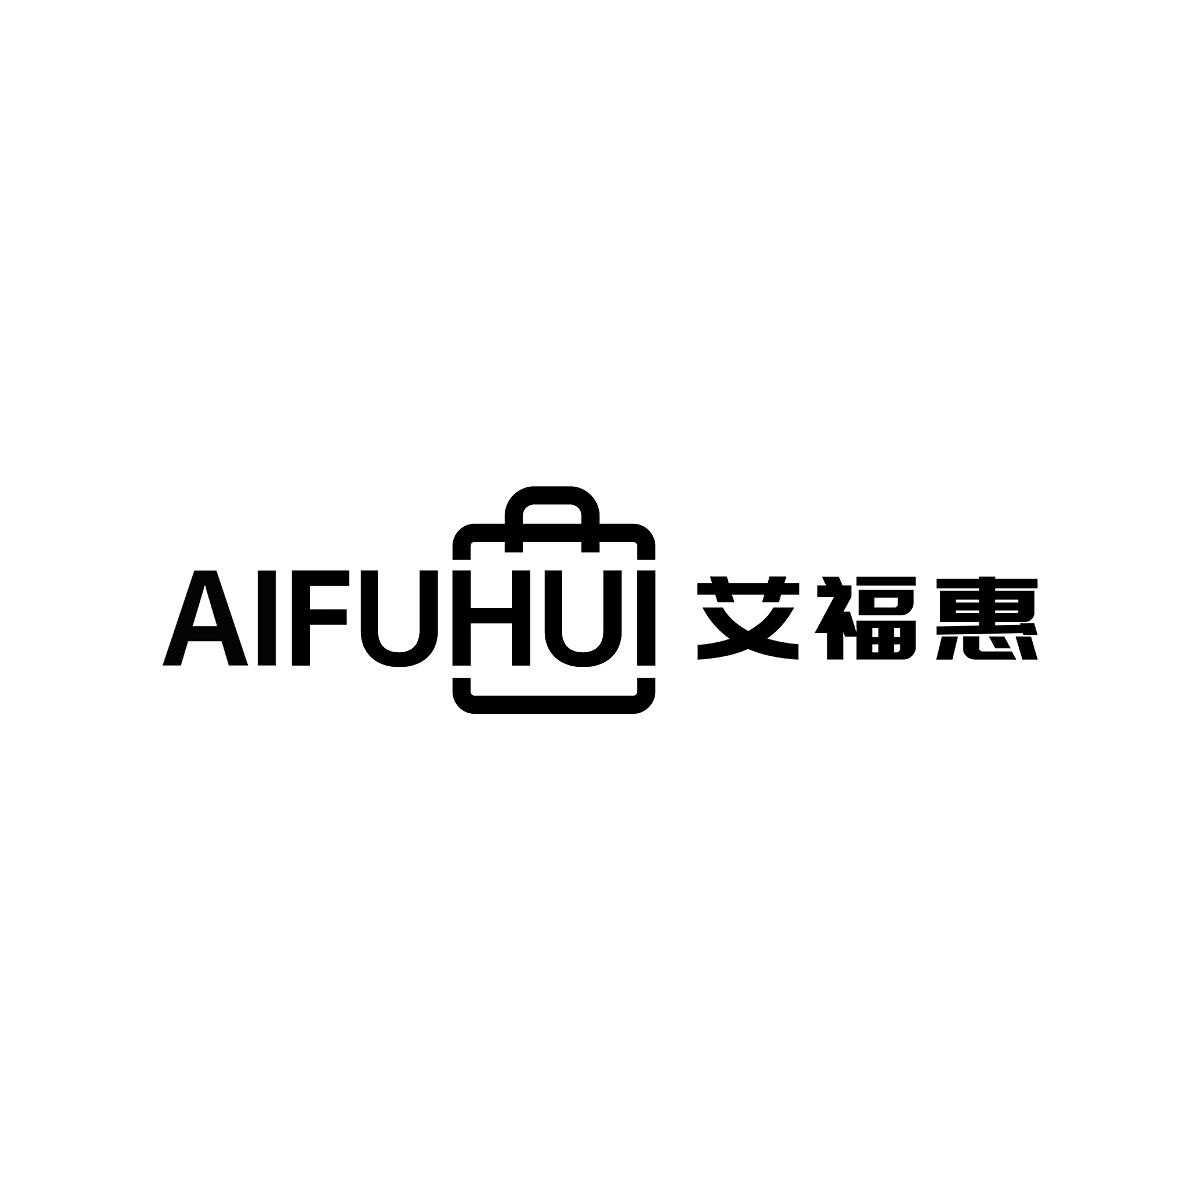 艾福惠AIFUHUI索引商标转让费用买卖交易流程